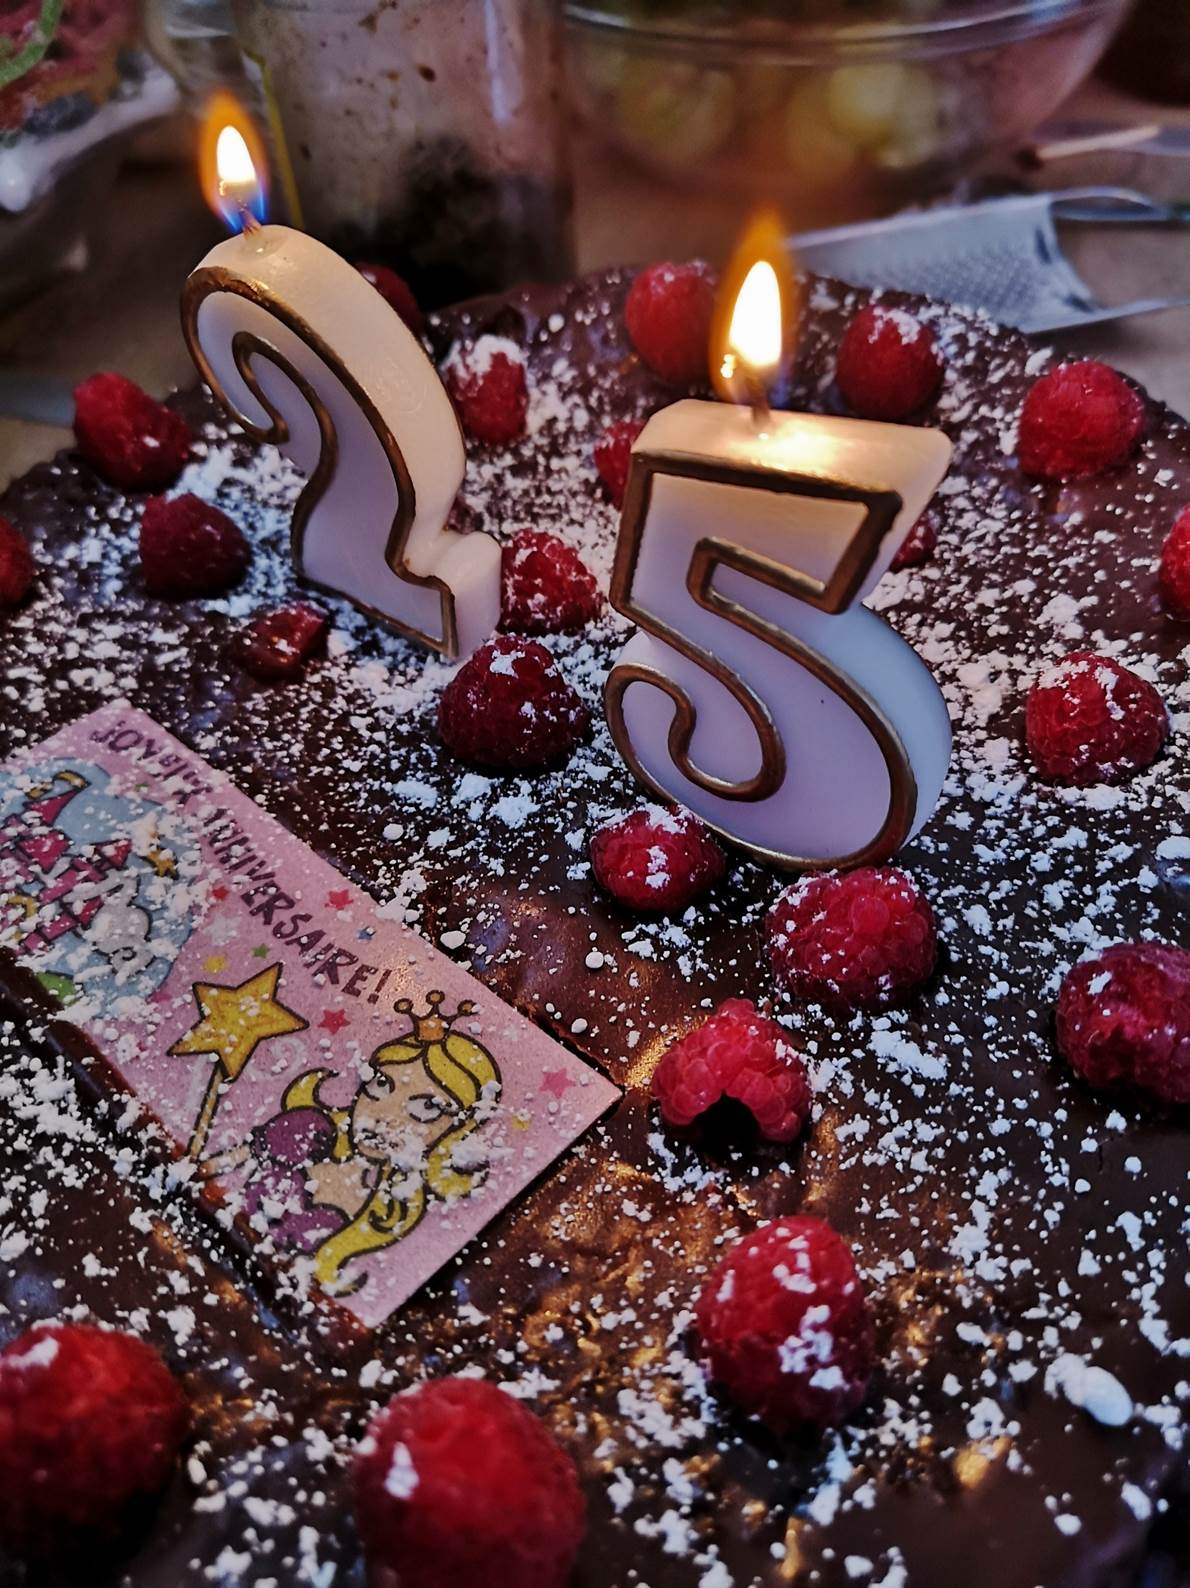 Une image contenant gâteau, table, anniversaire, assiette

Description générée automatiquement